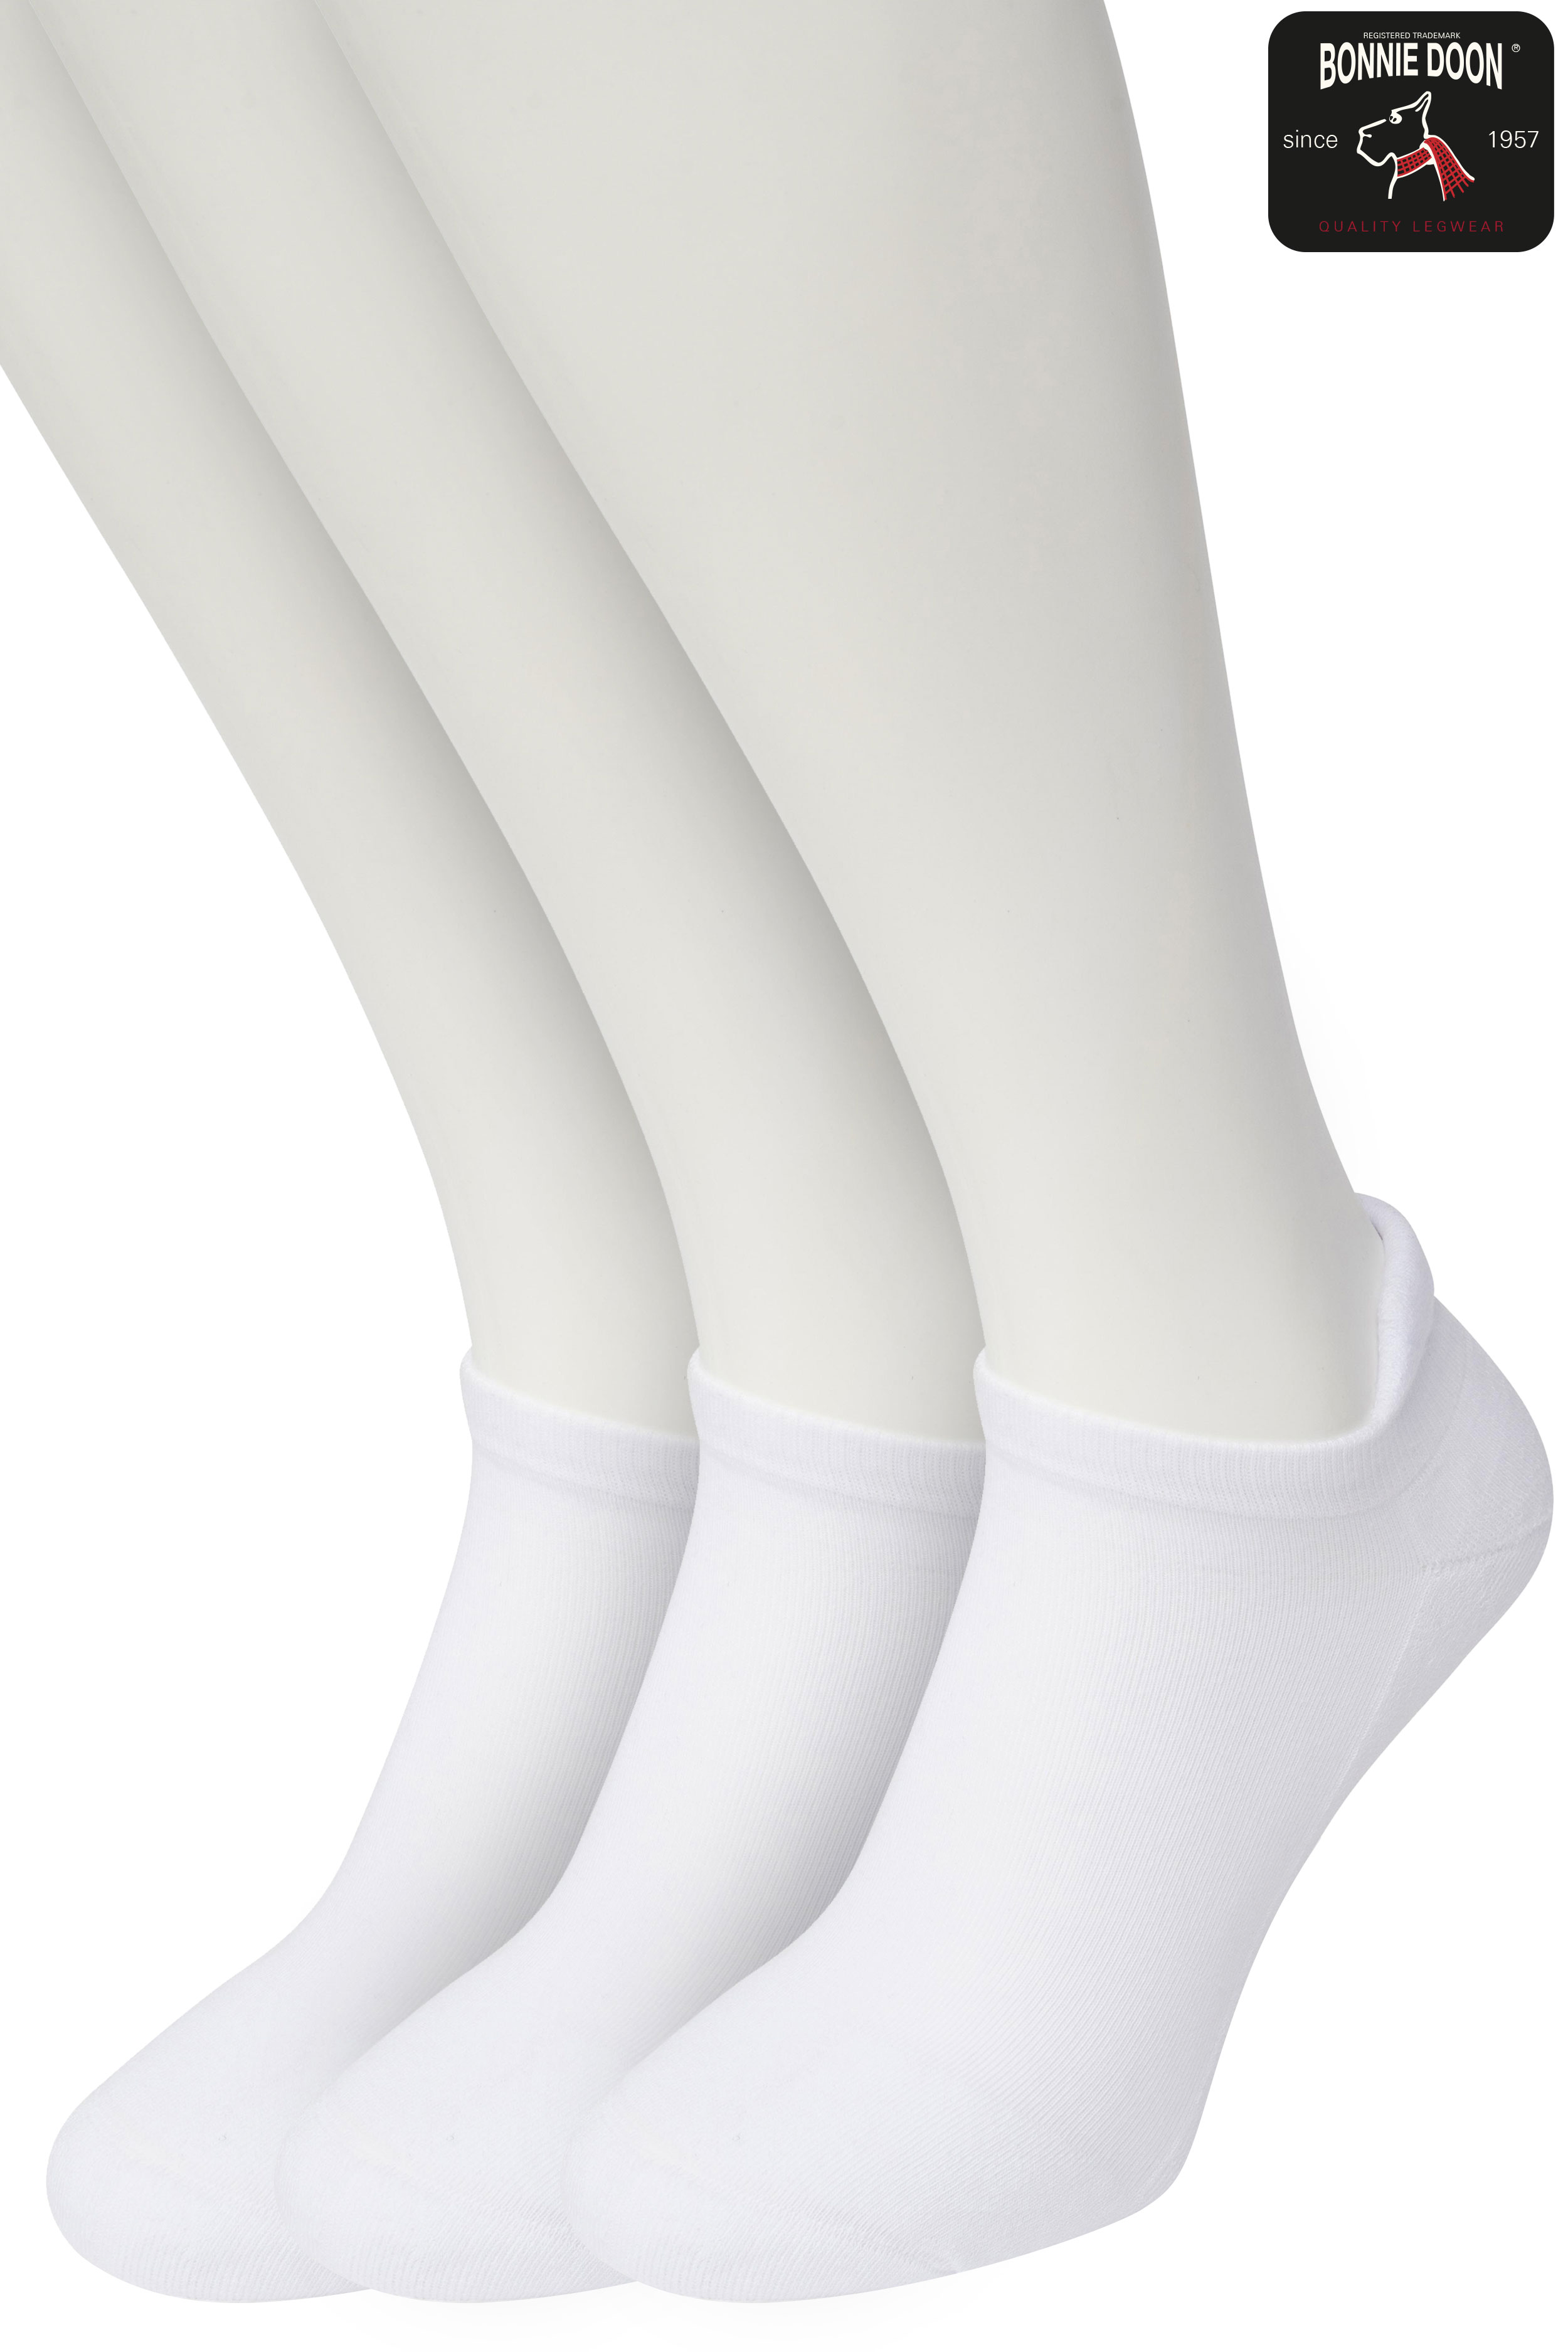 Cushion Short socks (3 paar) White white